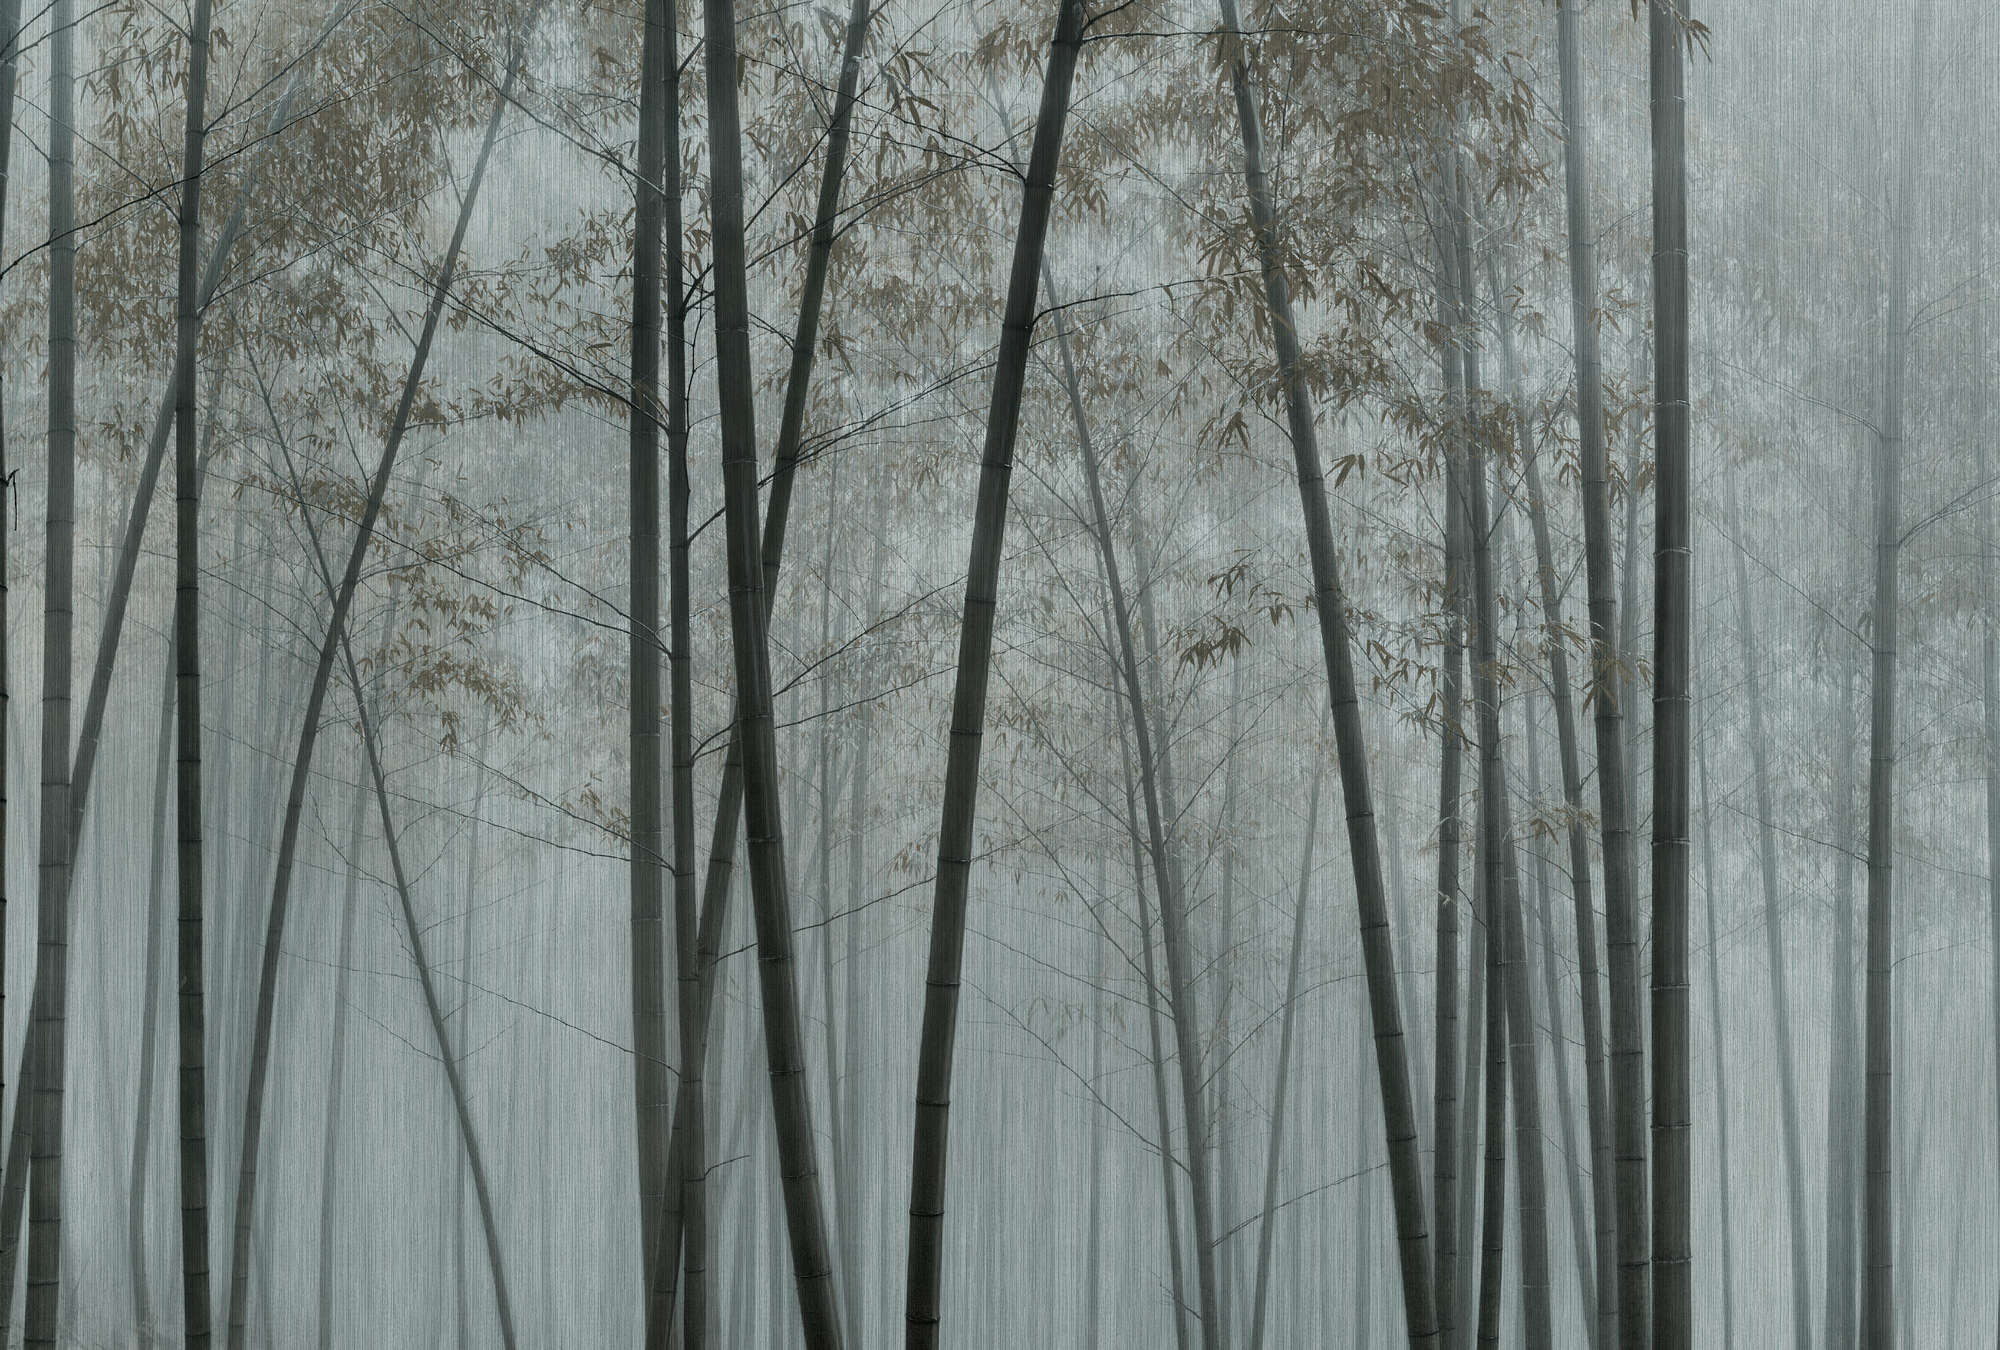             Nel bambù 1 - Sfondo bambù Foresta di bambù nella nebbia
        